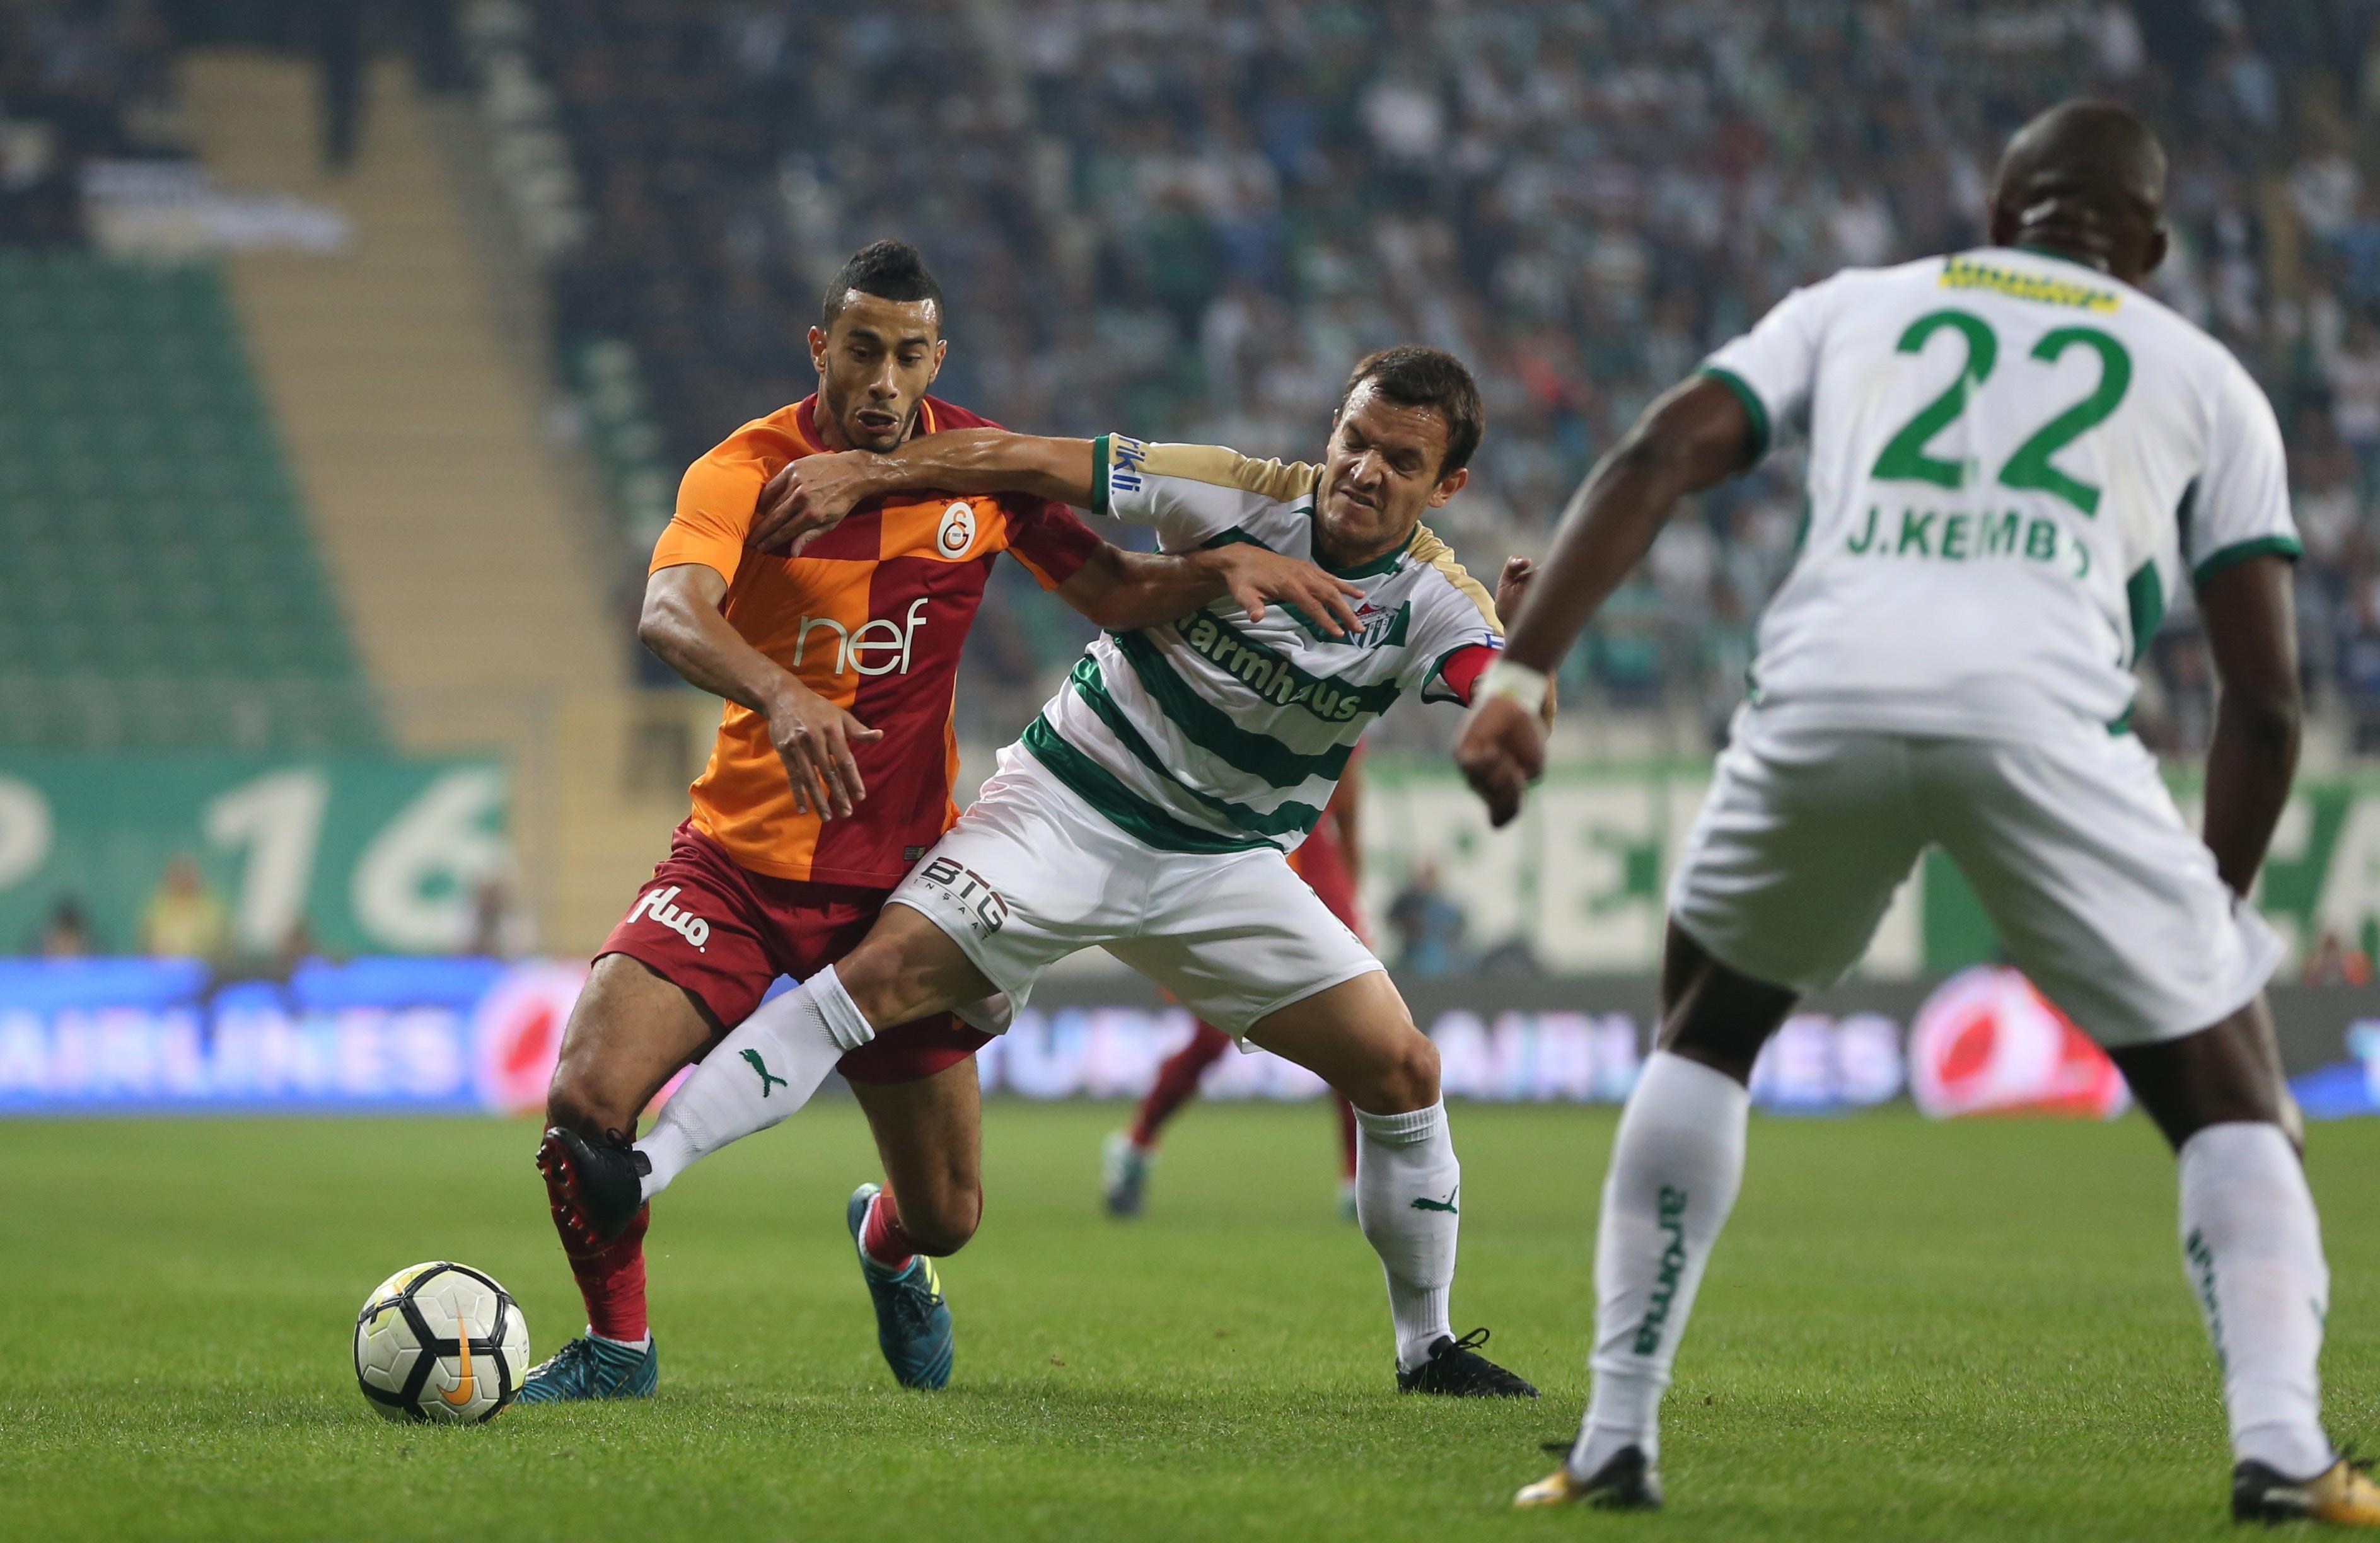 ÖZET - Bursaspor-Galatasaray maç sonucu: 1-2